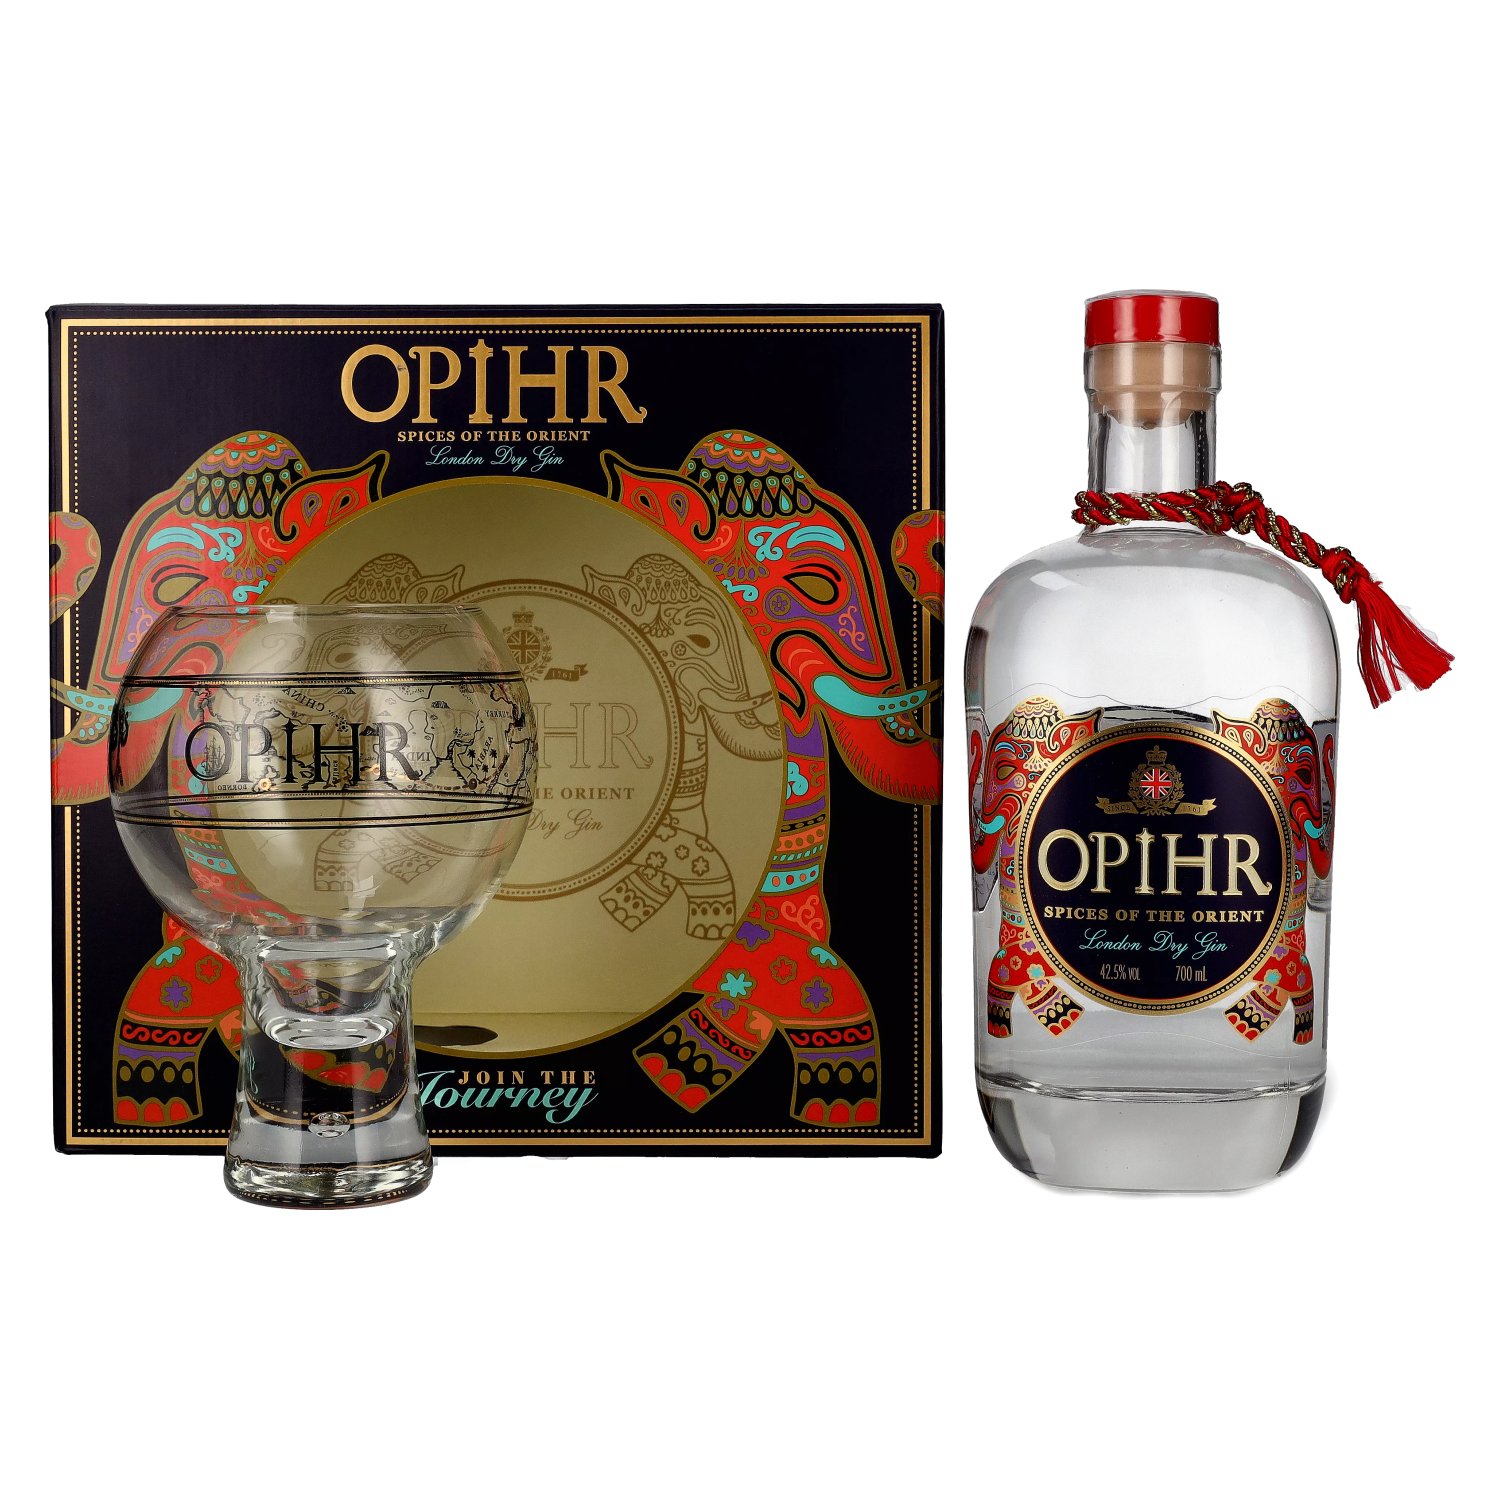 Opihr ORIENTAL Dry Gin London 42,5% Vol. 0,7l SPICED in Geschenkbox mit Globe-Glas